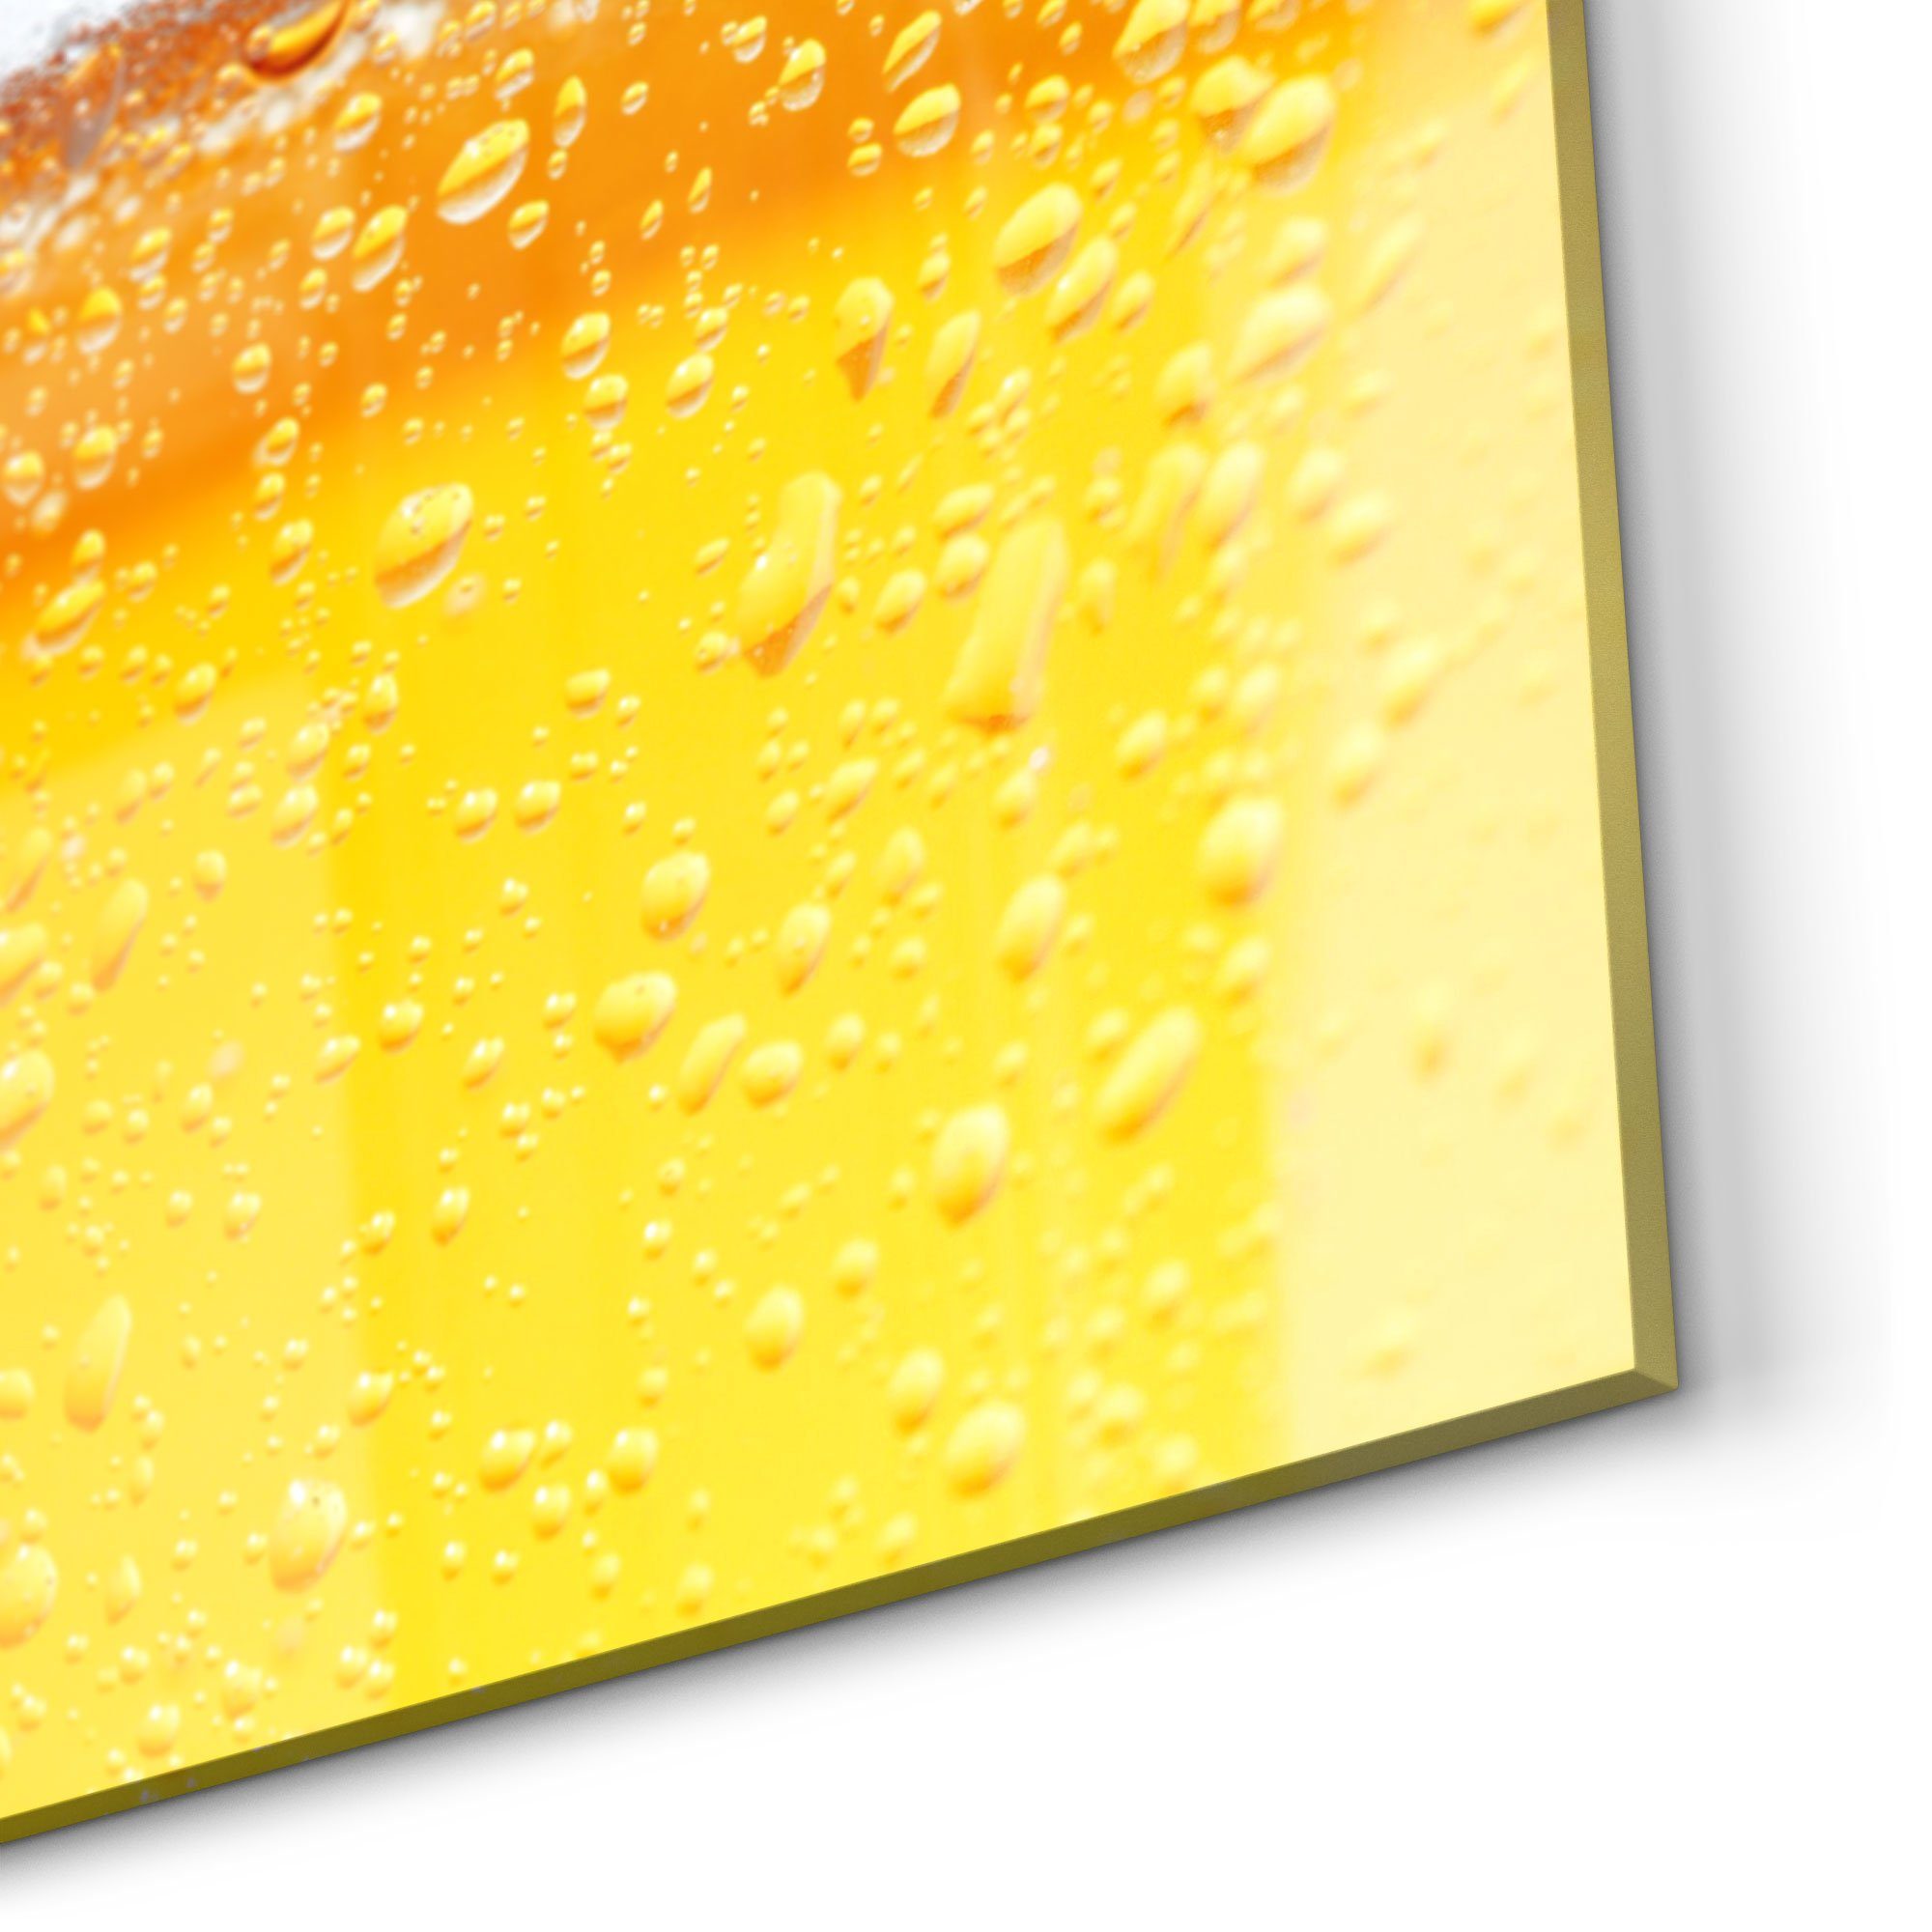 'Bier Spritzschutz DEQORI Schaumkrone', Badrückwand mit Herdblende Küchenrückwand Glas